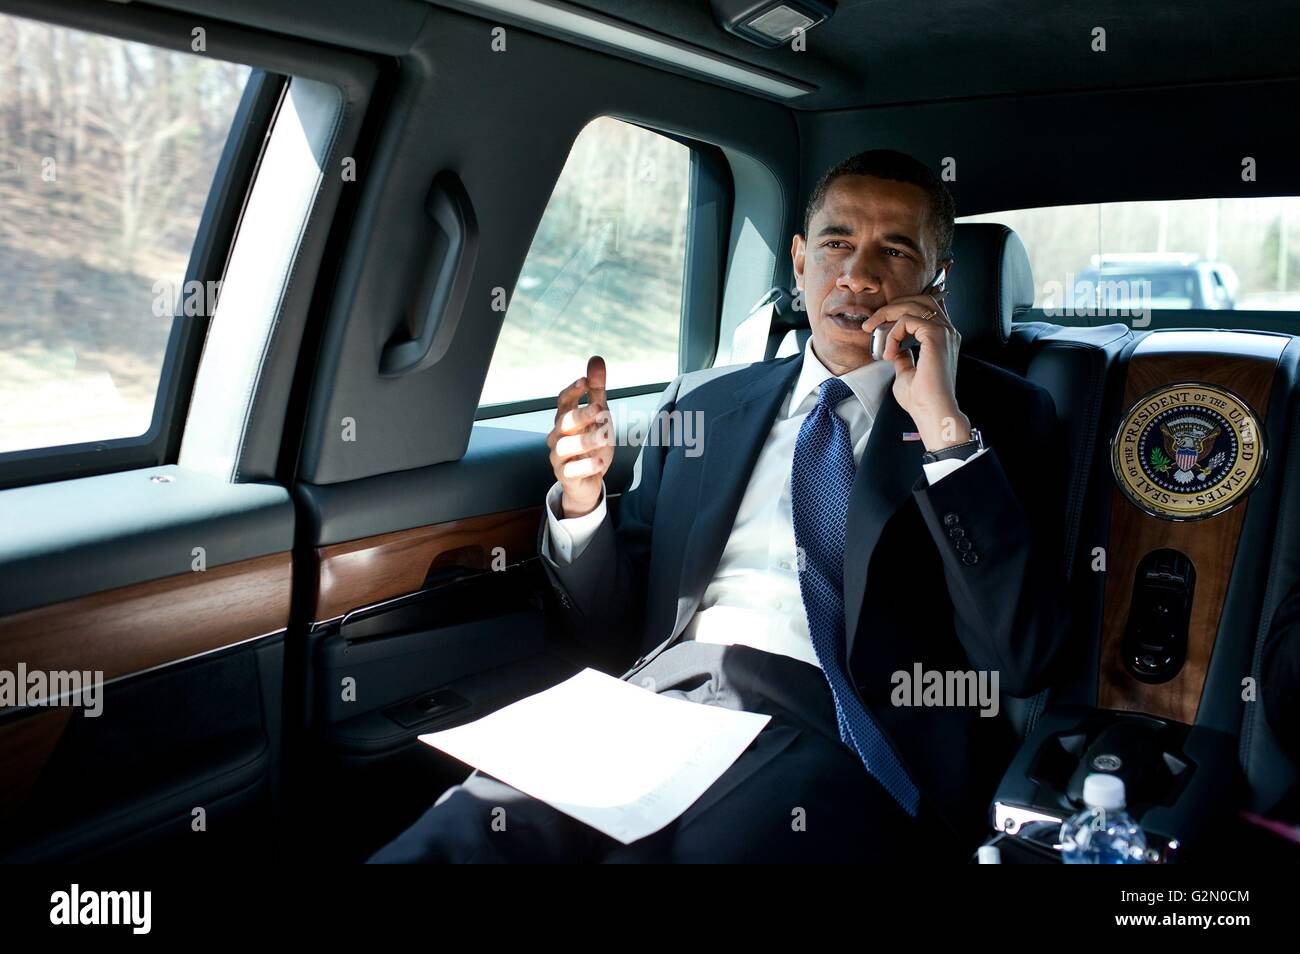 Barack Hussein Obama II (nacido el 4 de agosto de 1961); el 44º Presidente de los Estados Unidos, habla por teléfono en la limusina presidencial de 2013. Foto de stock